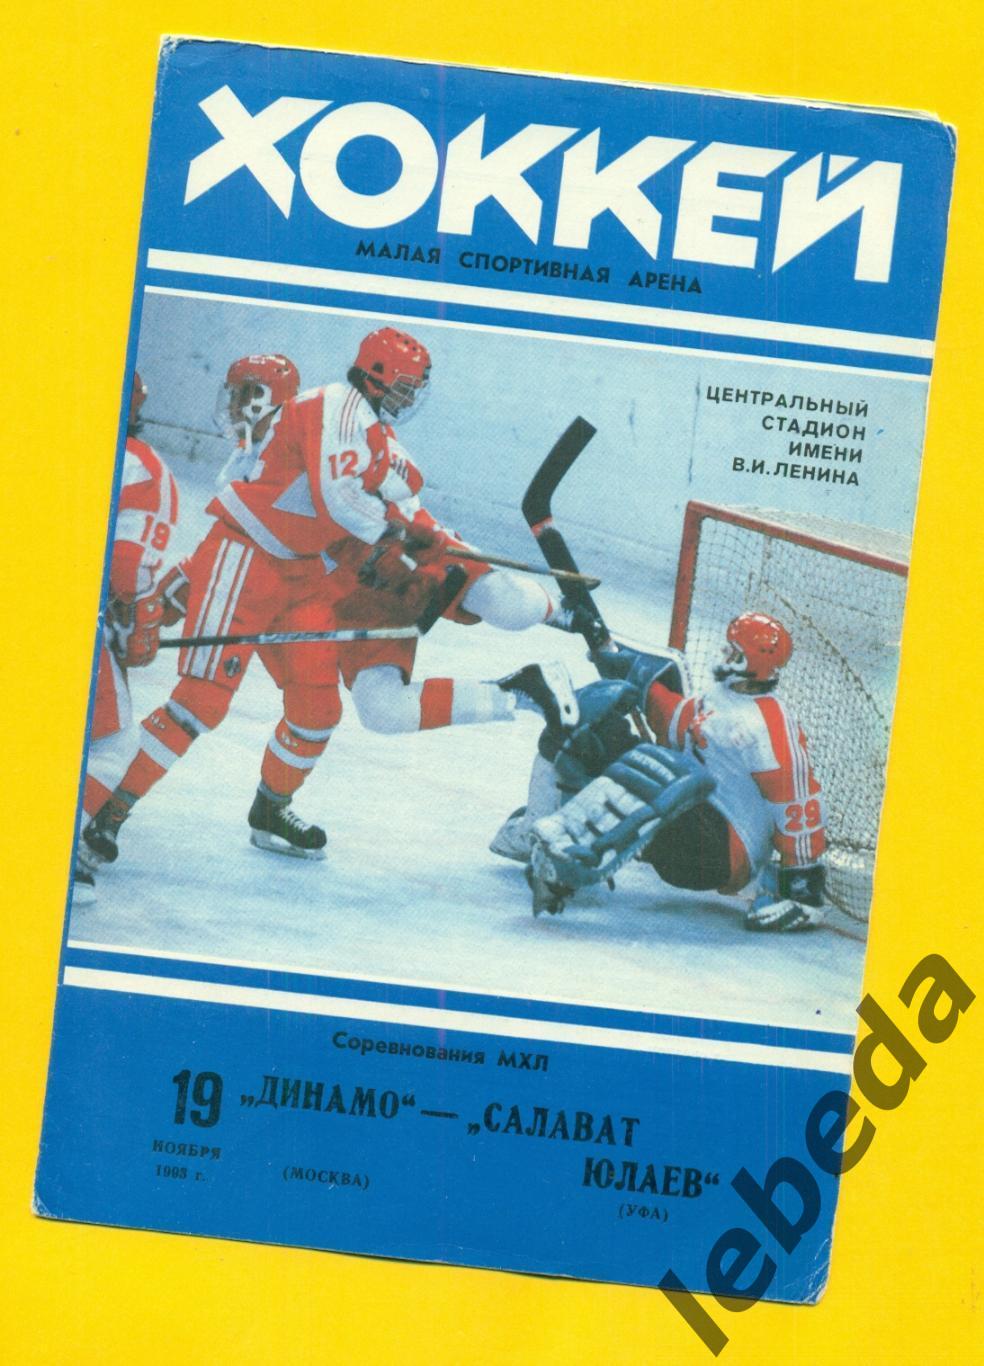 Динамо Москва - Салават Юлаев Уфа - 1993 / 1994 г. ( 19.11.93.)